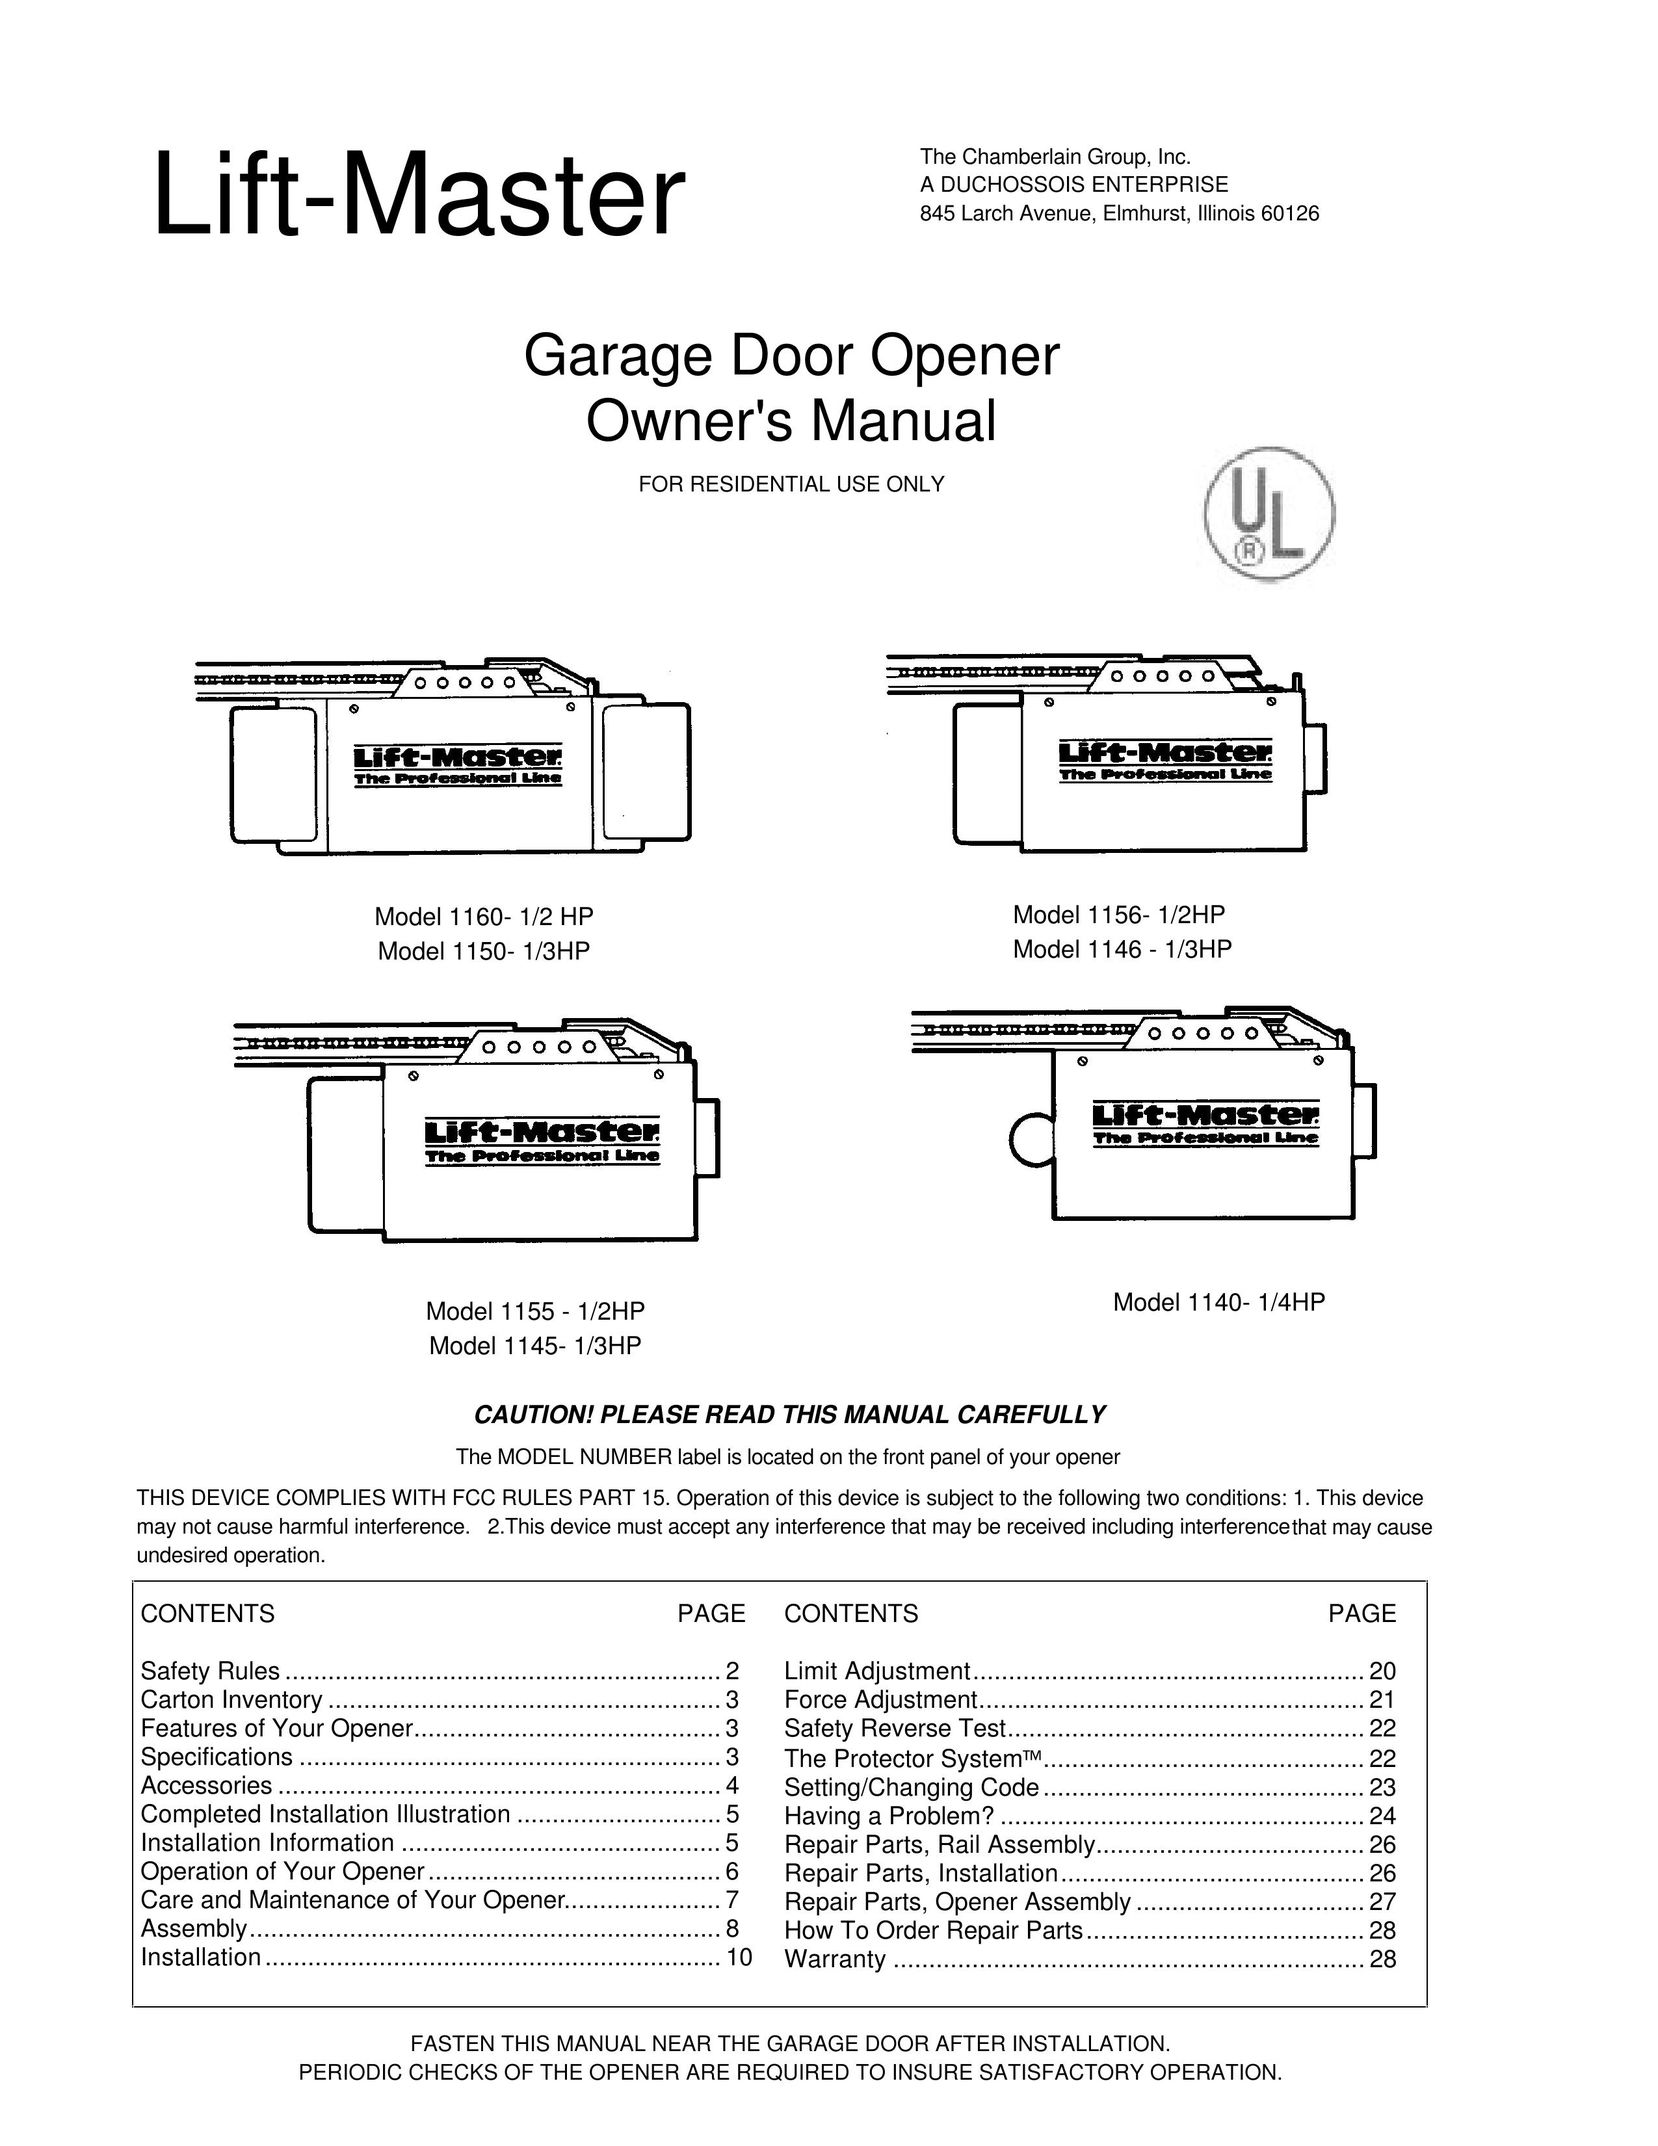 Chamberlain 1146 - 1/3HP Garage Door Opener User Manual (Page 1)